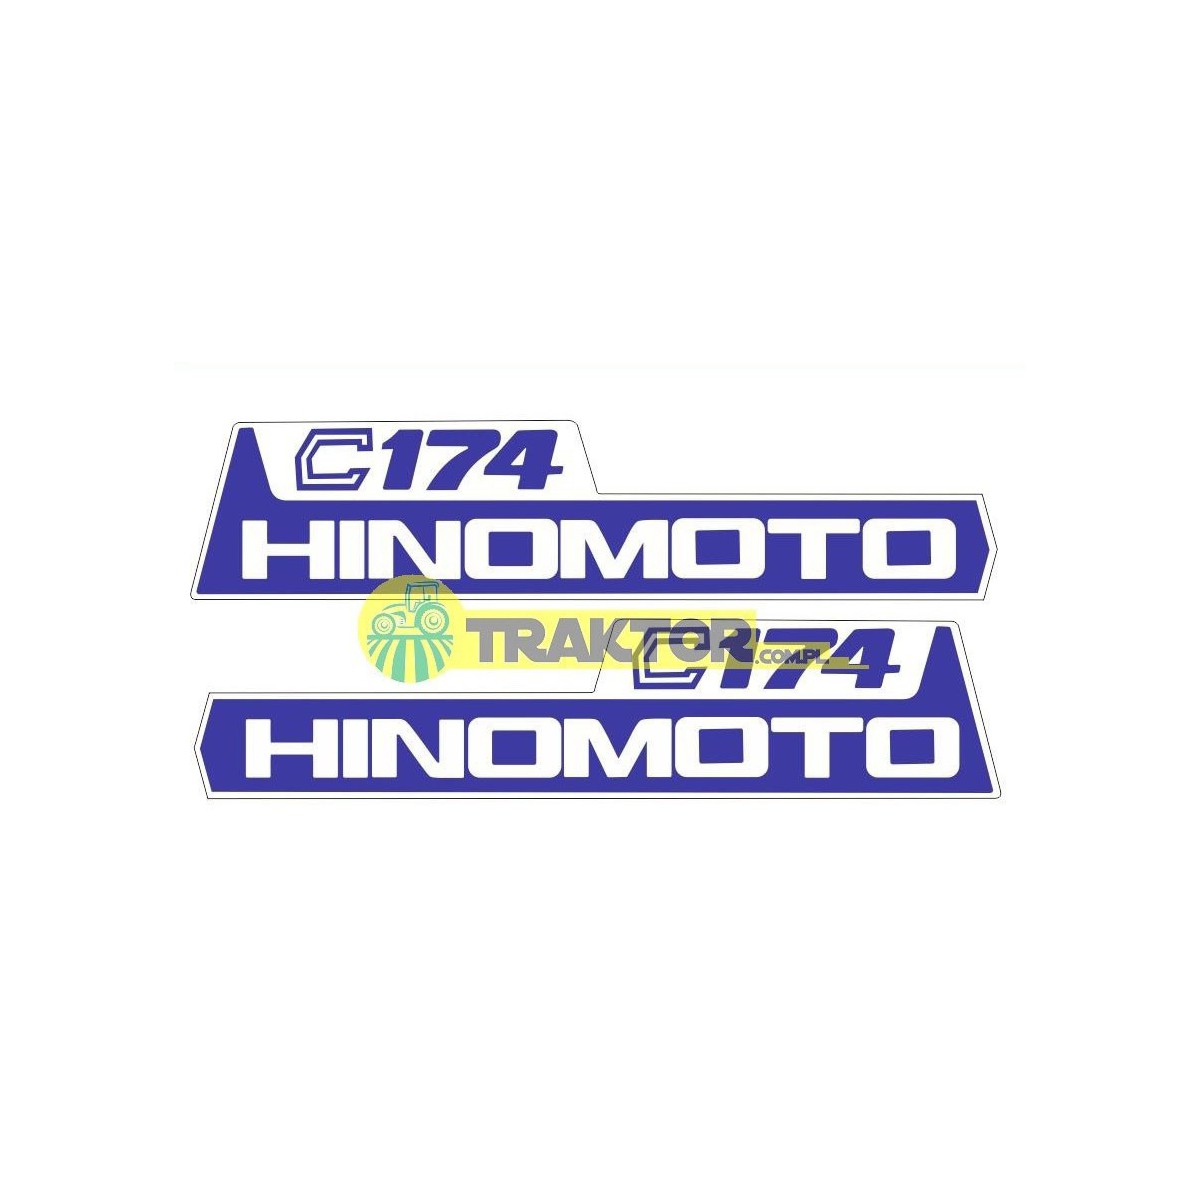 HINOMOTO C174 pegatinas